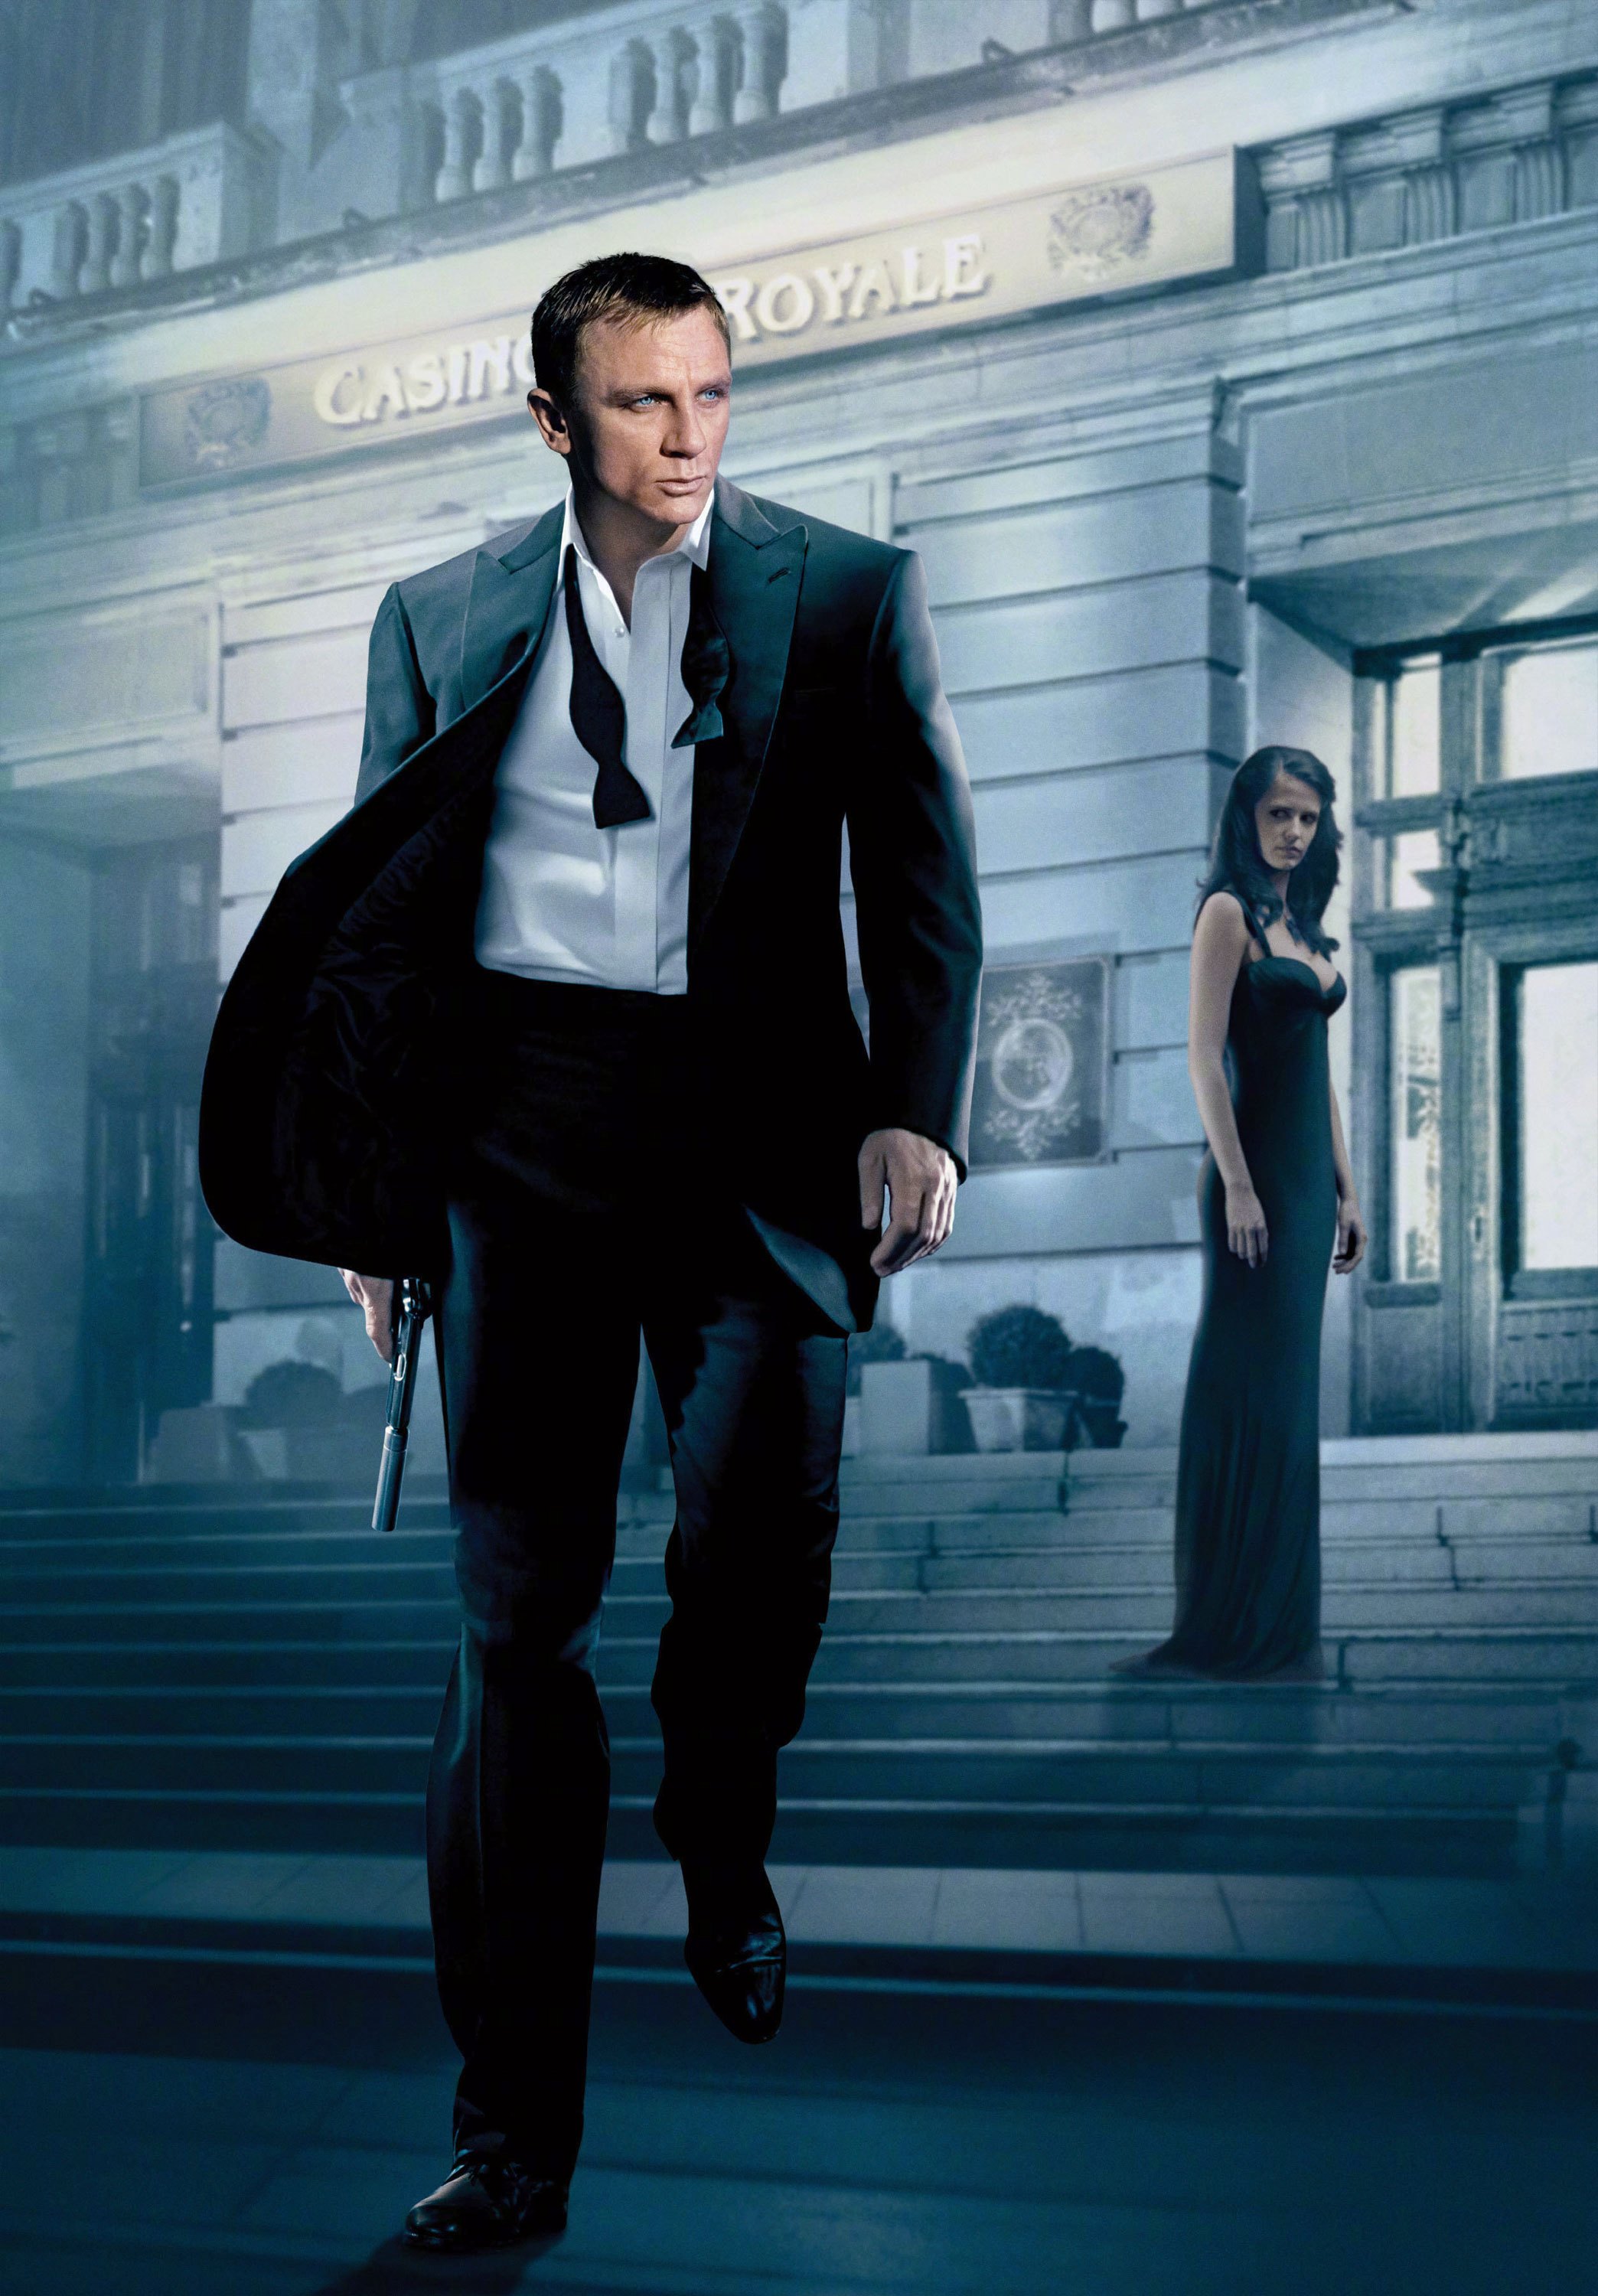 原创007要让女性出演邦女郎伊娃格林发声没必要这样